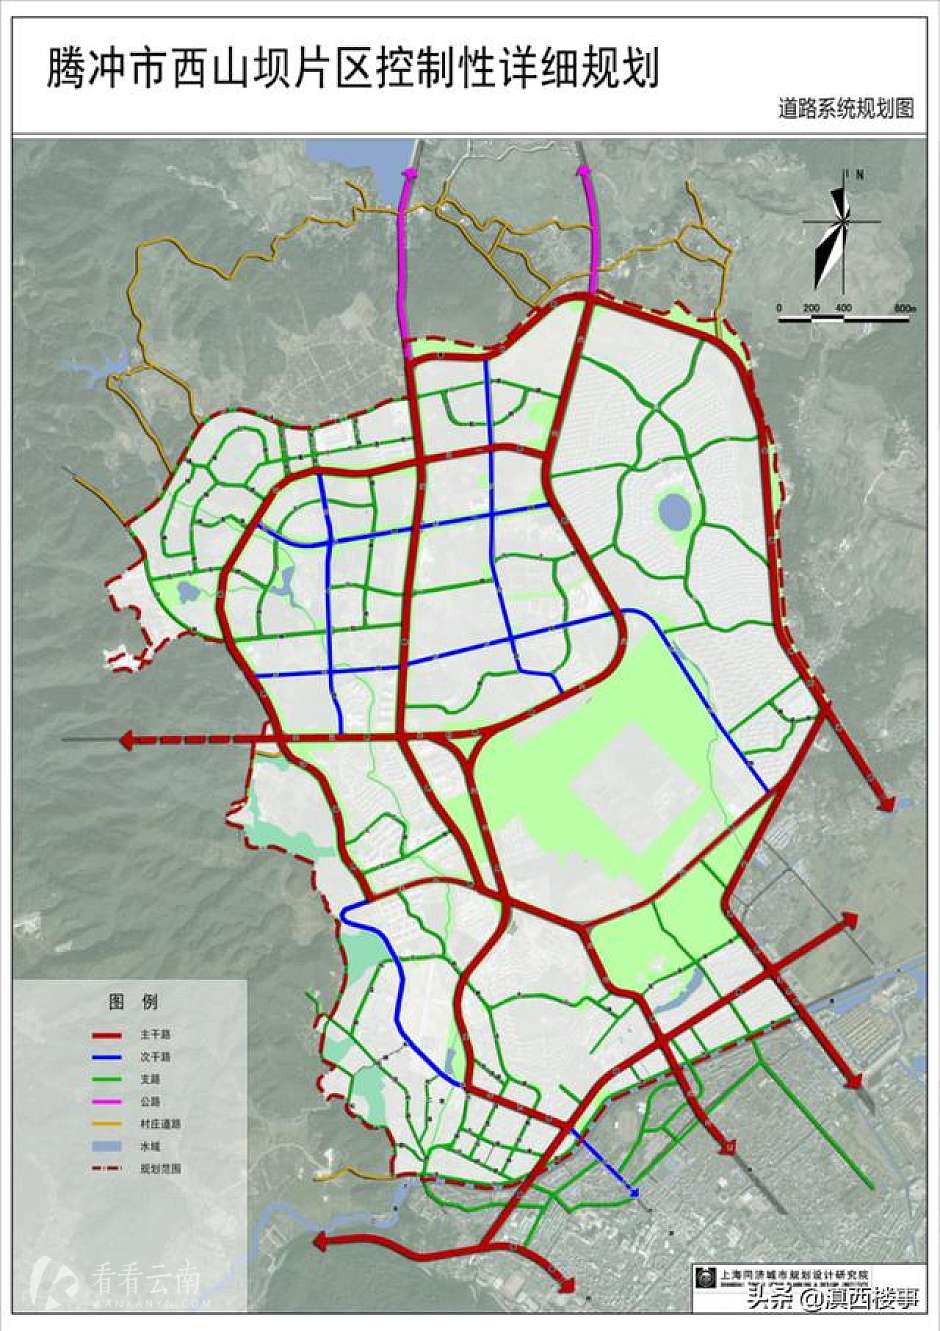 腾冲市西山坝区控制性详规之道路系统规划图